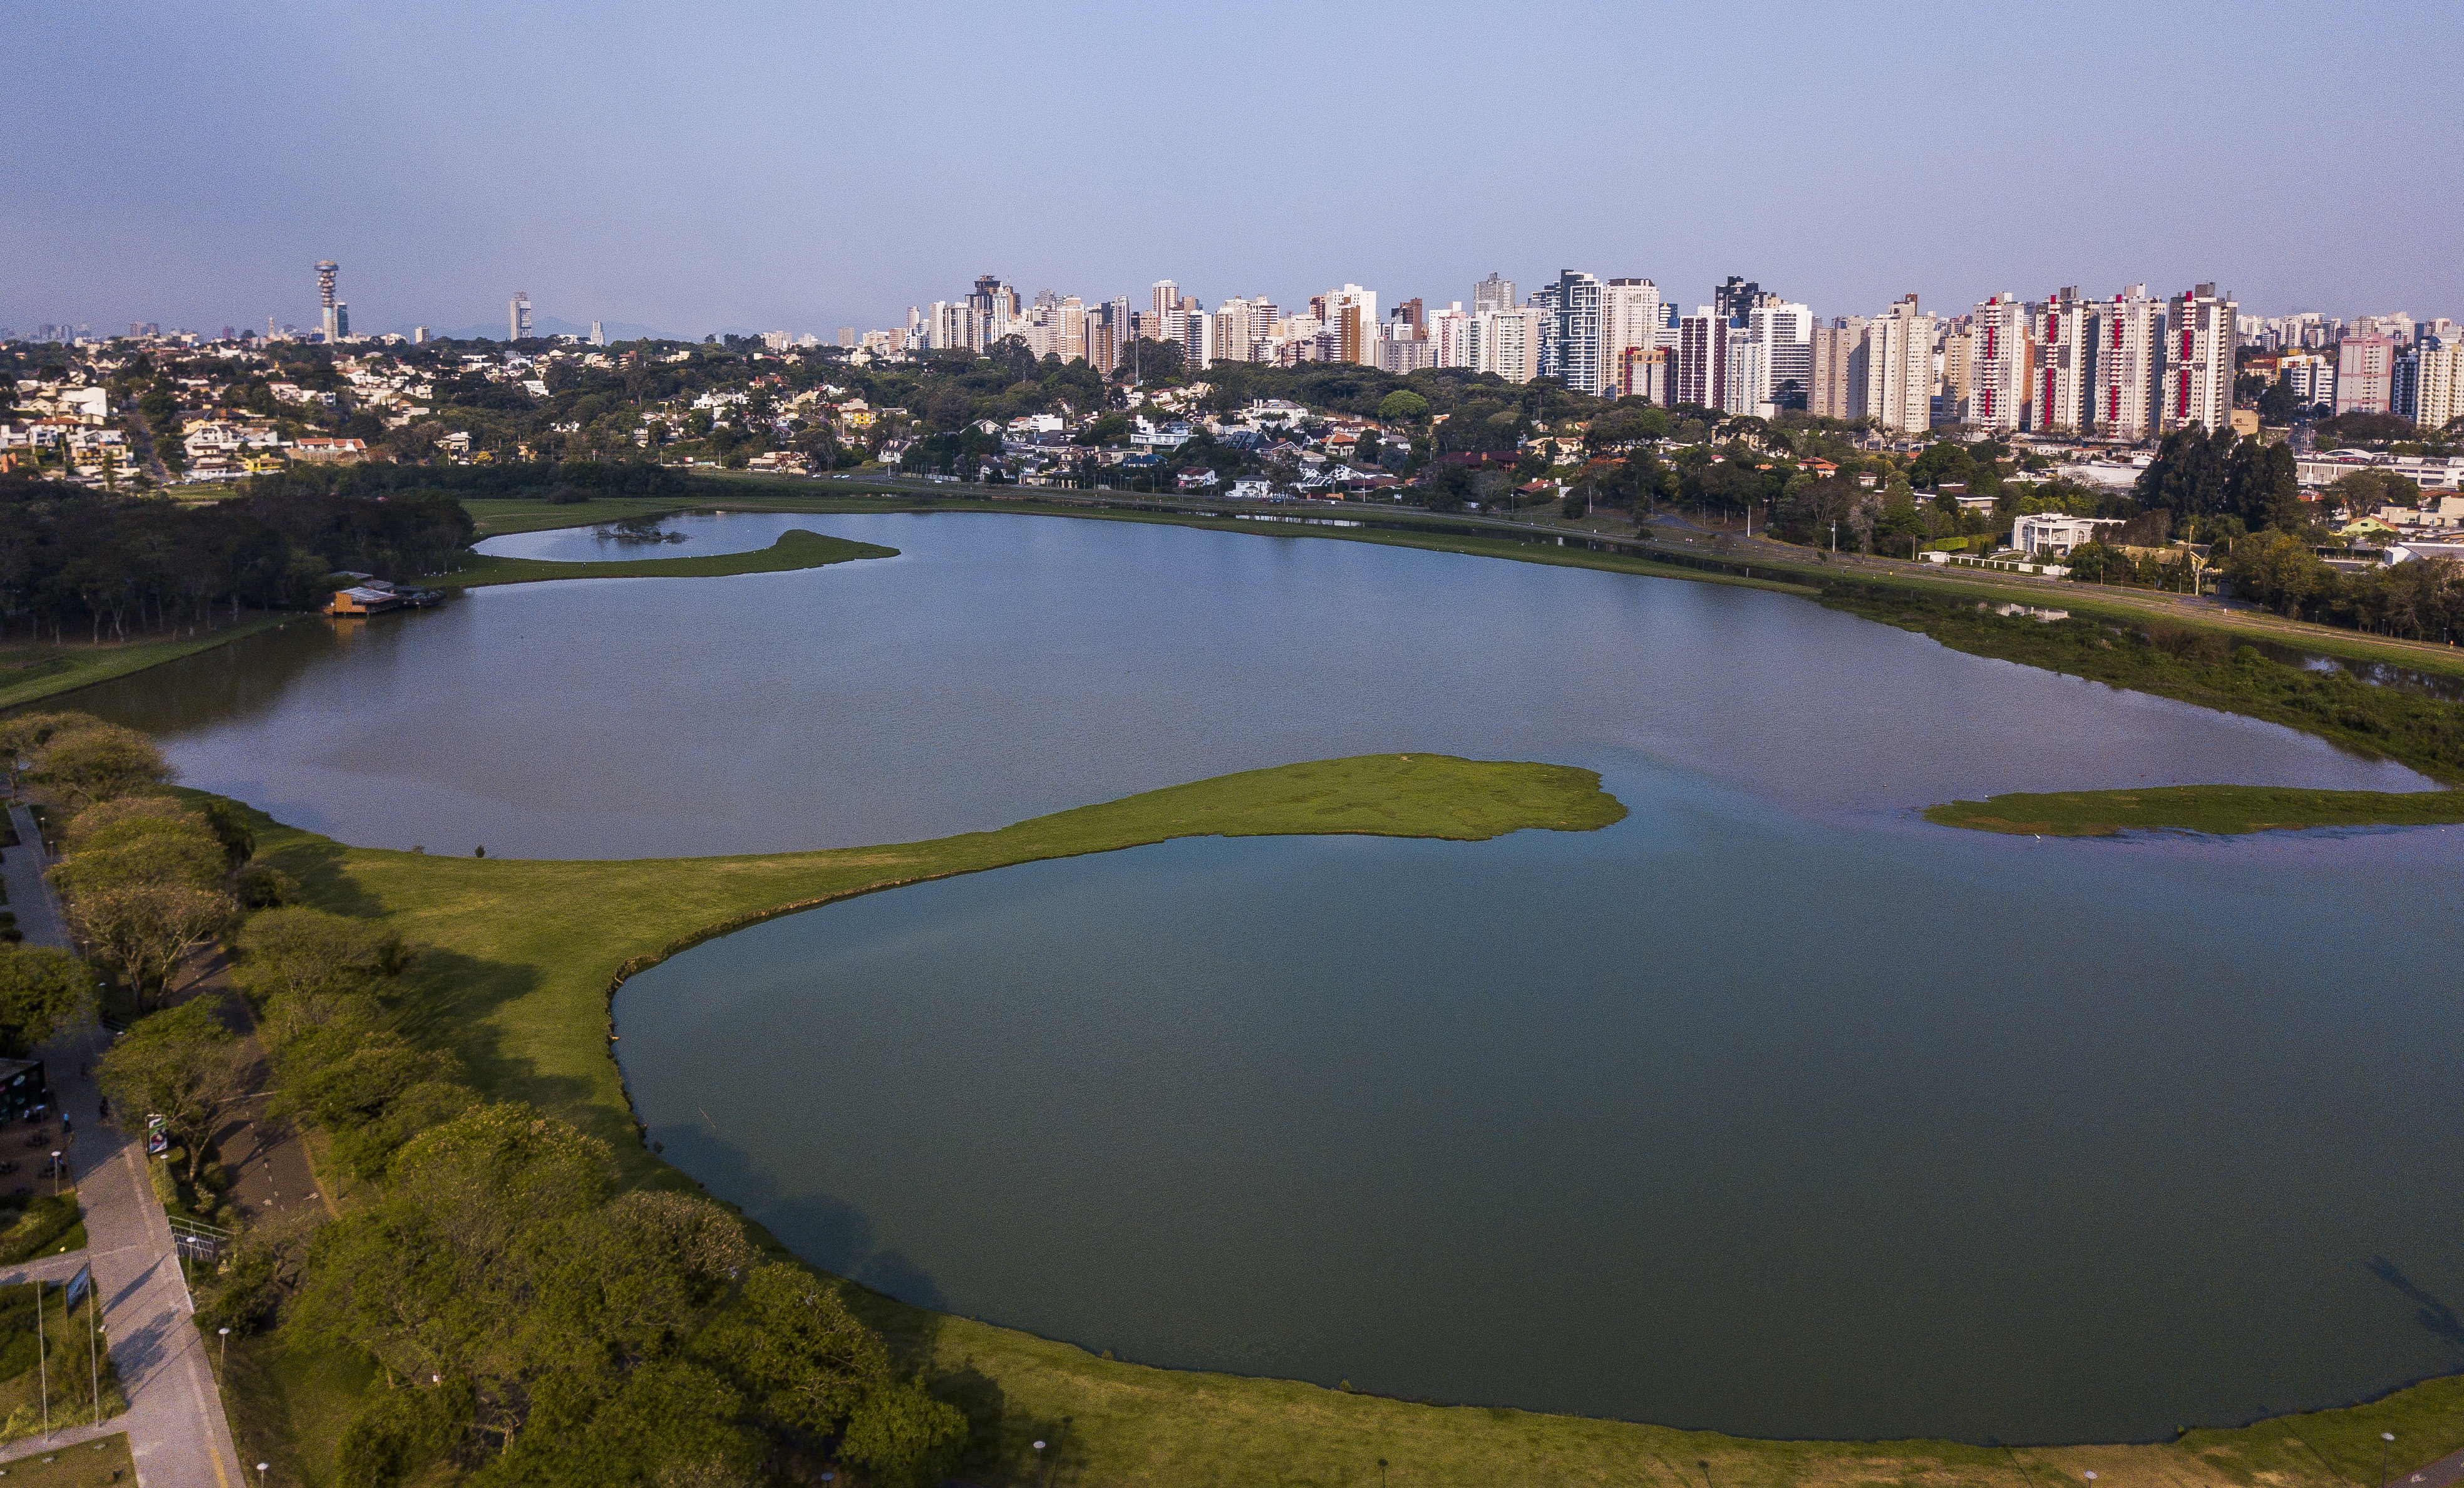  Curitiba é a cidade com o maior reajuste nos alugueis nos últimos doze meses